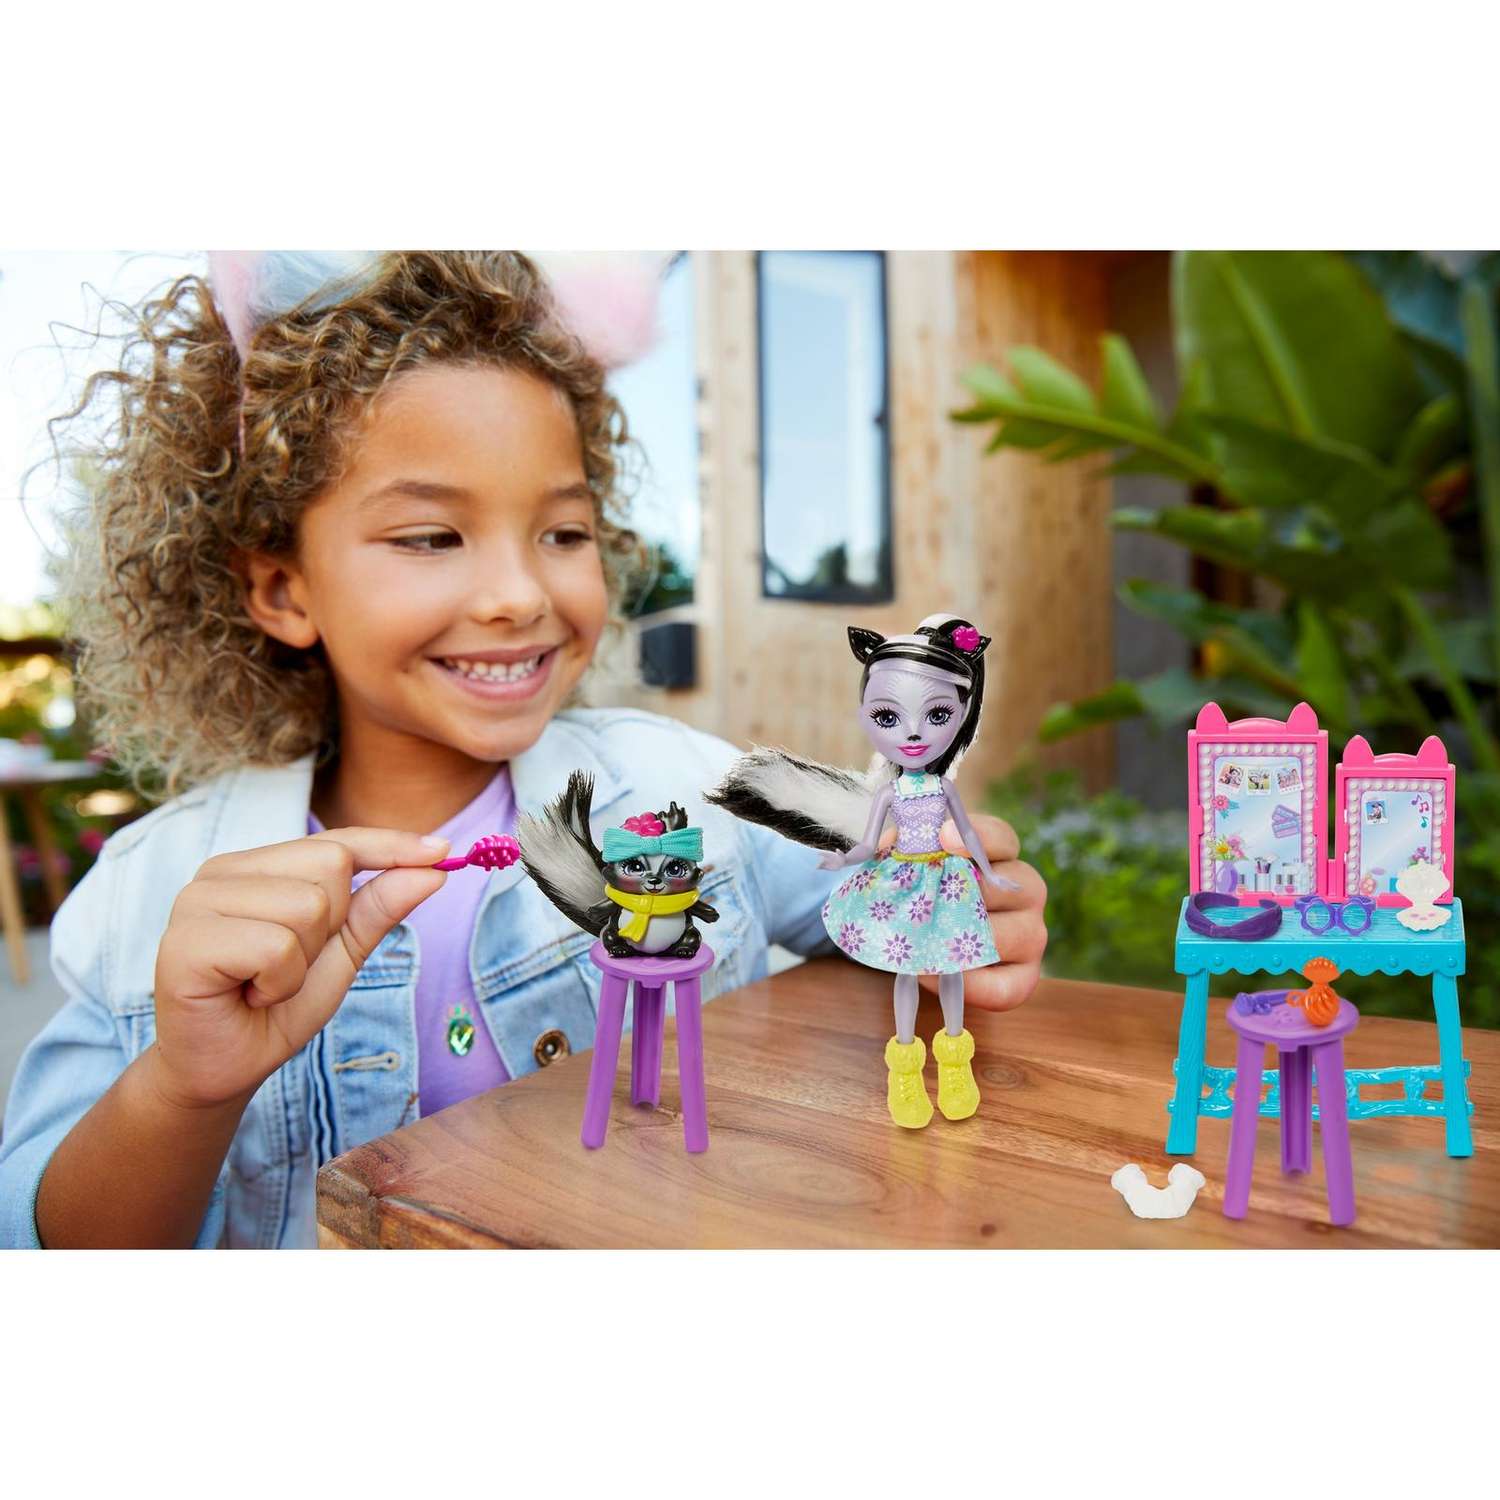 Набор игровой Enchantimals кукла Сэйдж Скунси и Кейпер с аксессуарами GJX34 GJX32 - фото 10